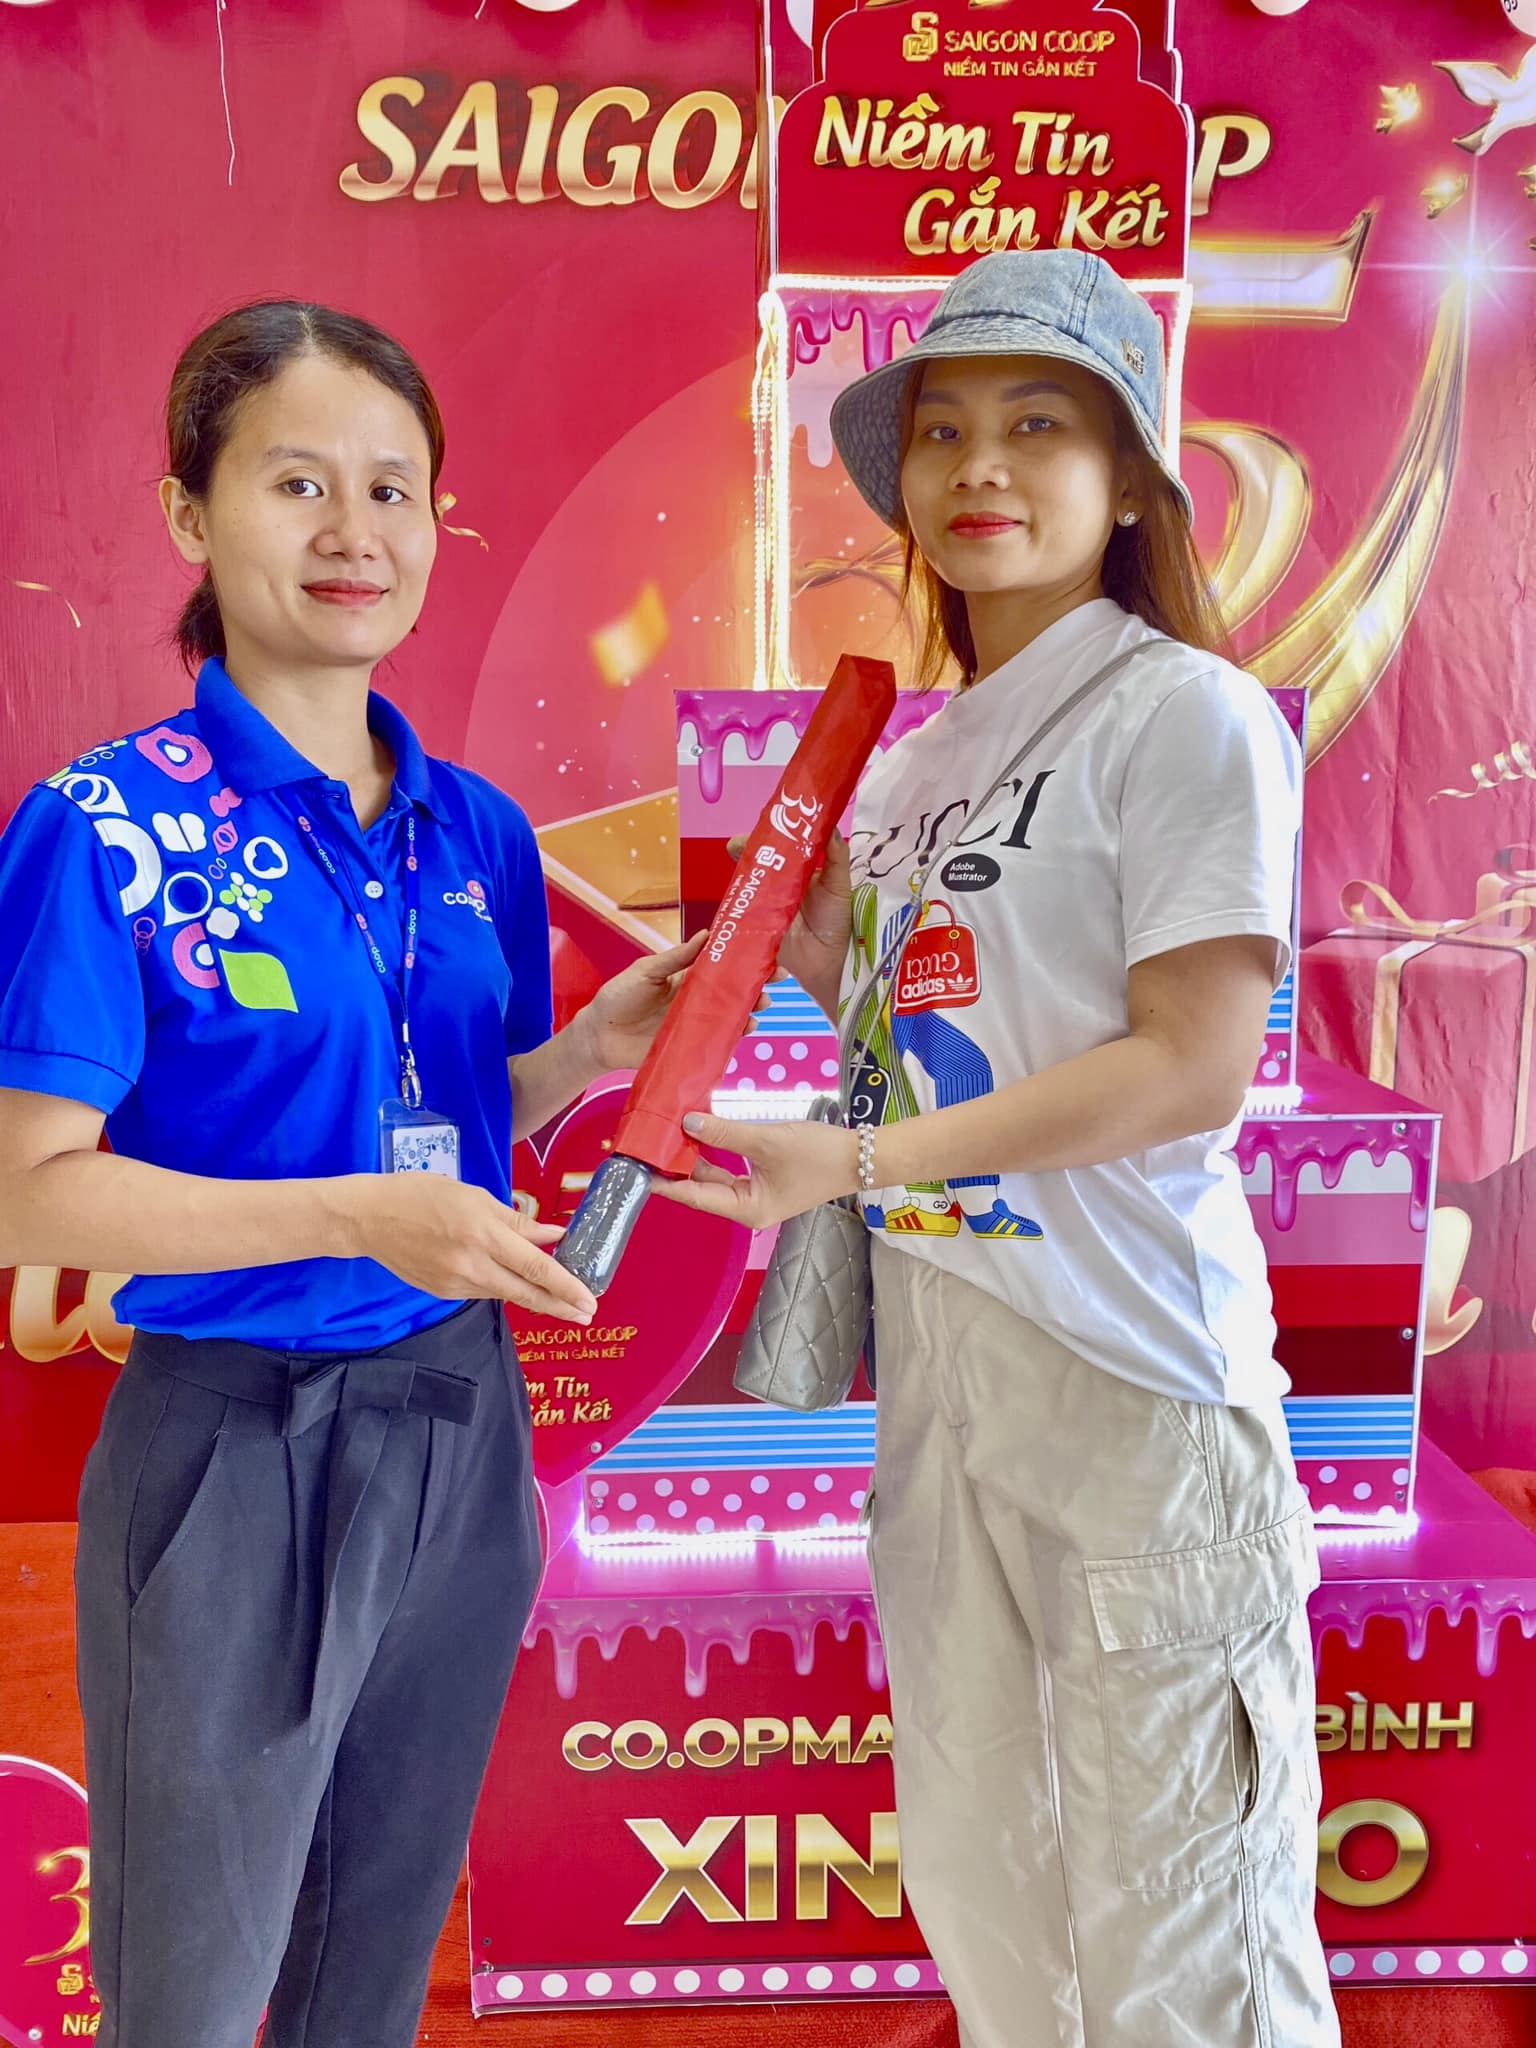 Co.opmart khu vực miền Trung tặng khách hàng dù cầm tay - Ảnh: Saigon Co.op